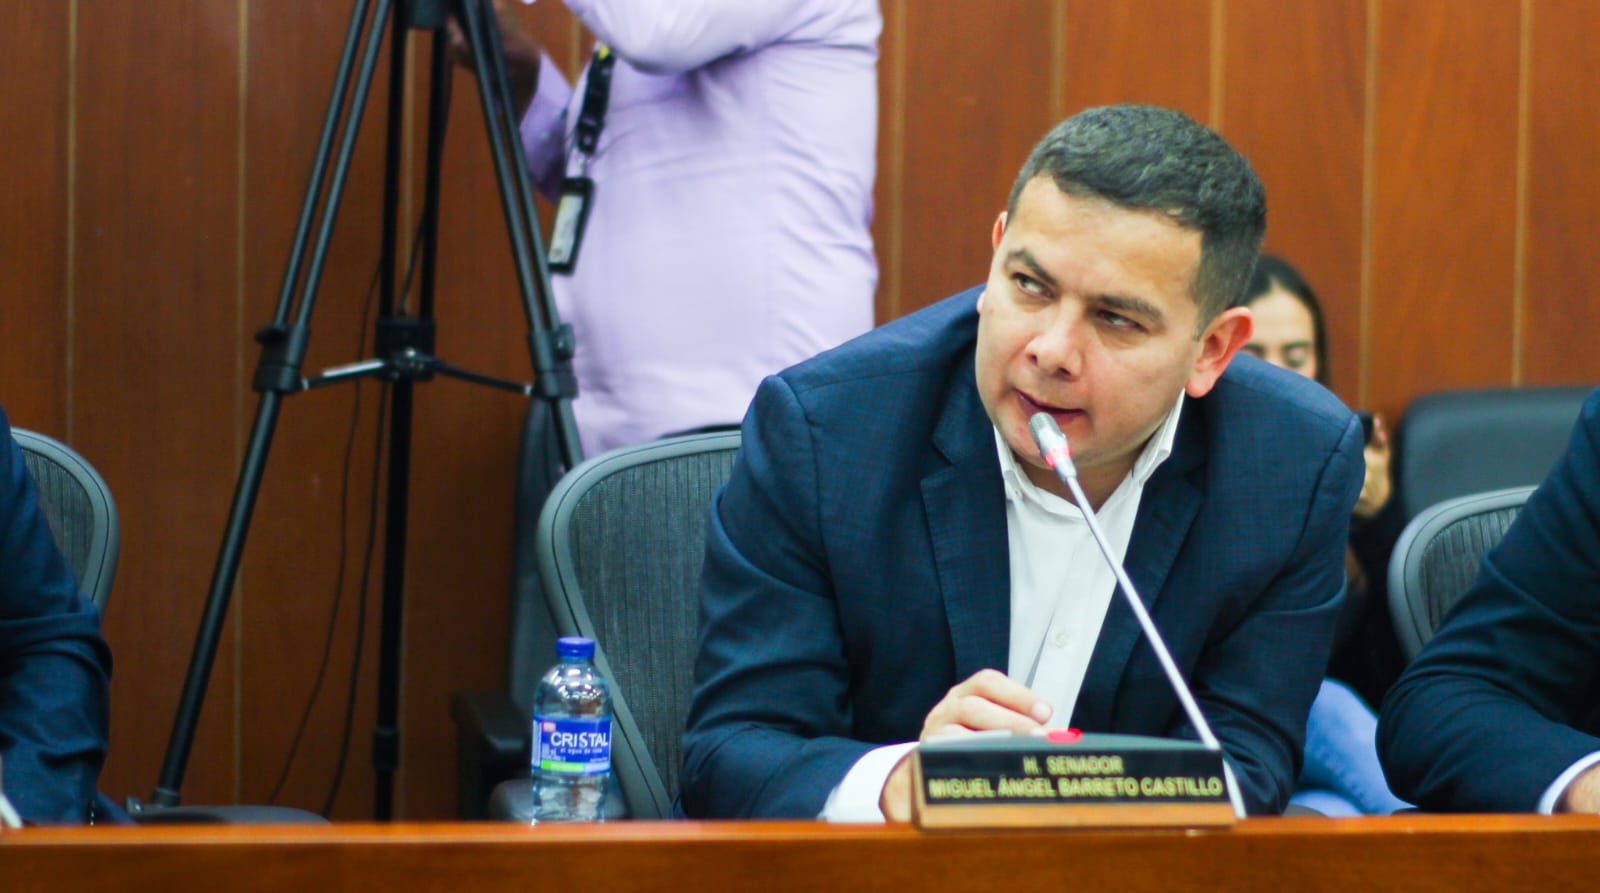 ¡Atención! Consejo de estado niega nulidad de la elección del senador miguel Ángel Barreto Castillo